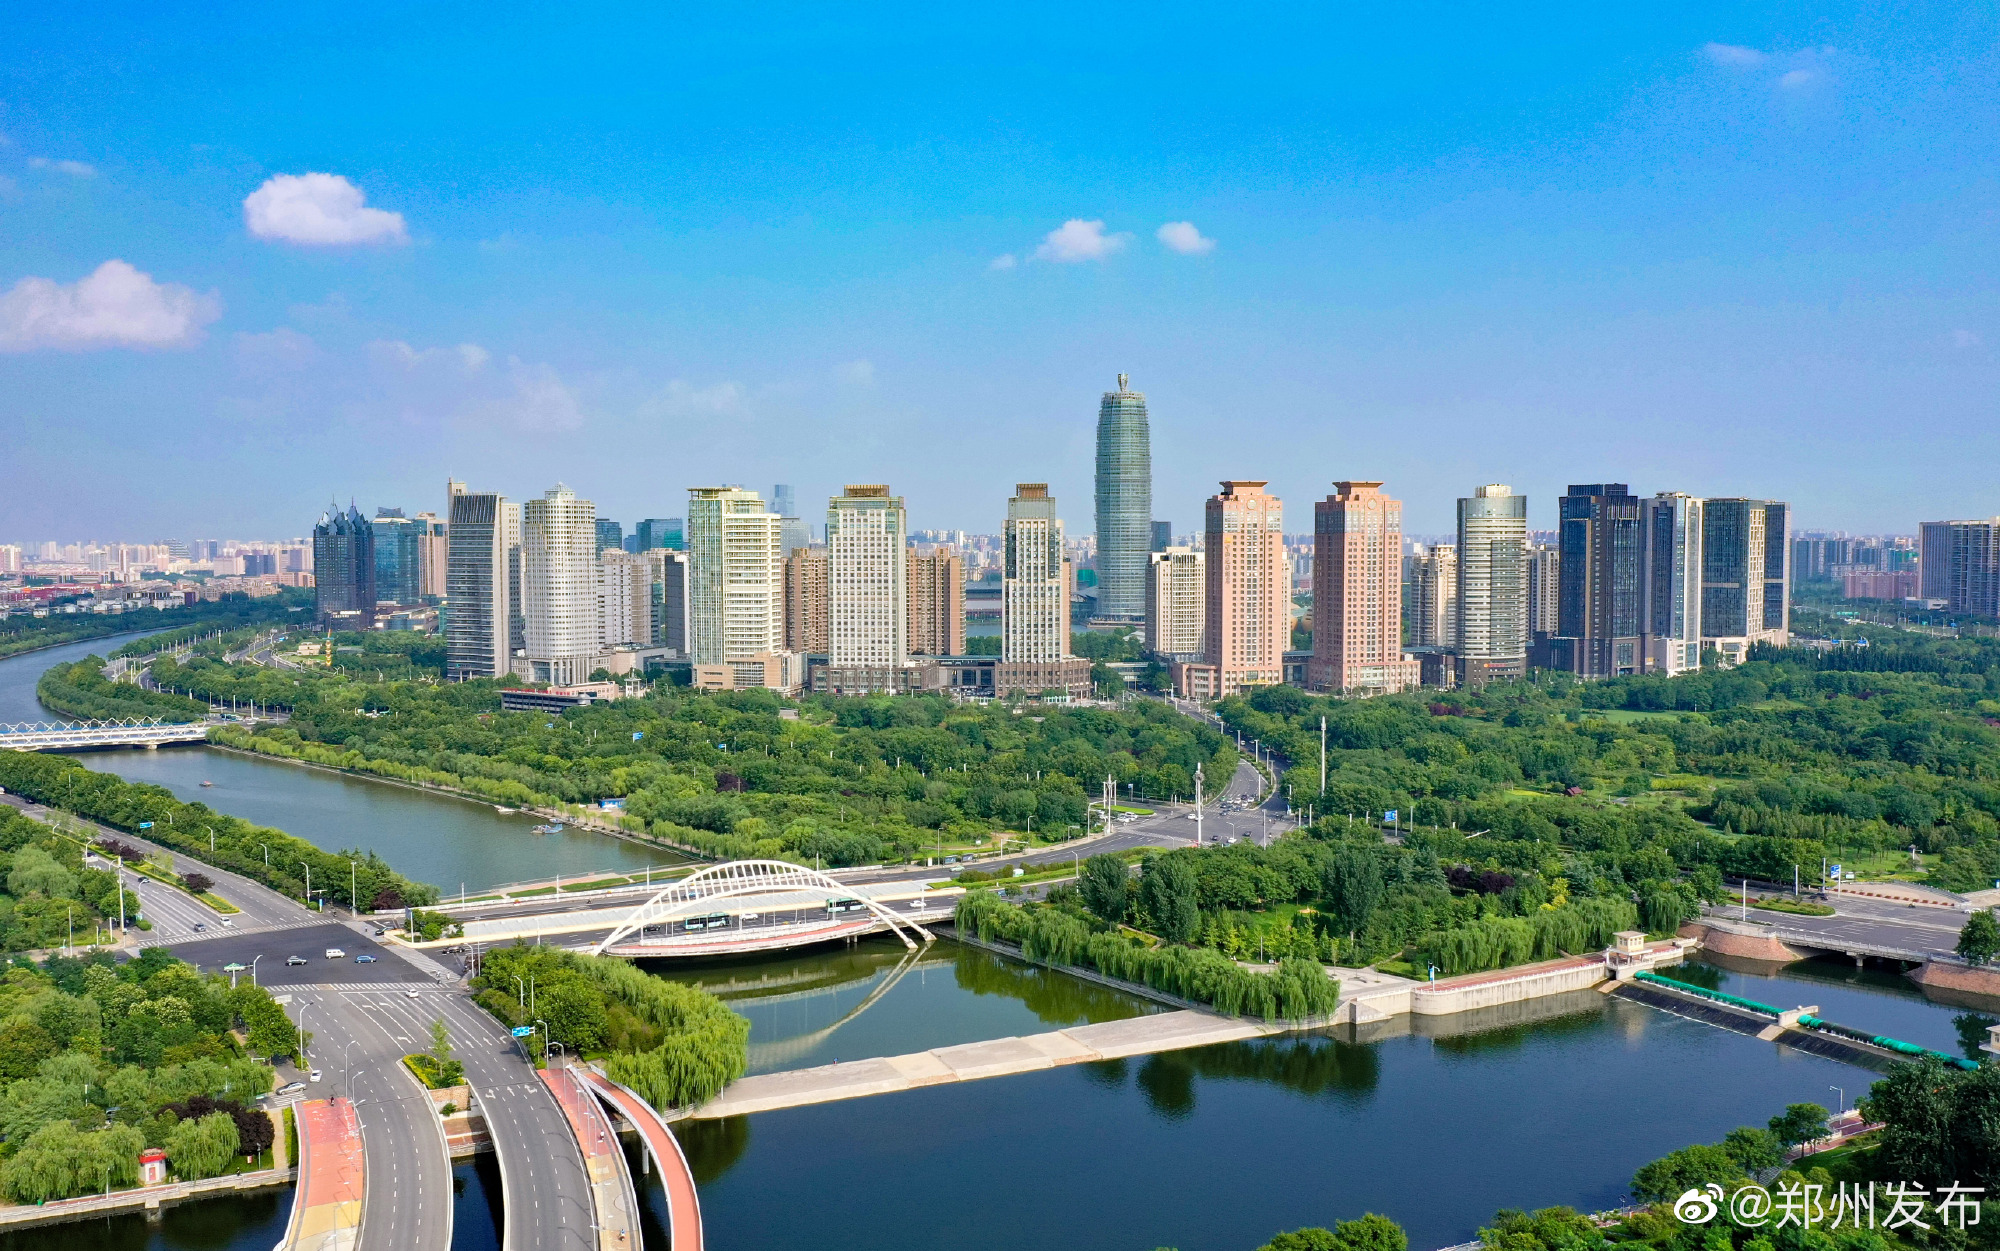 走好中国式现代化河南实践的 绿色发展之路